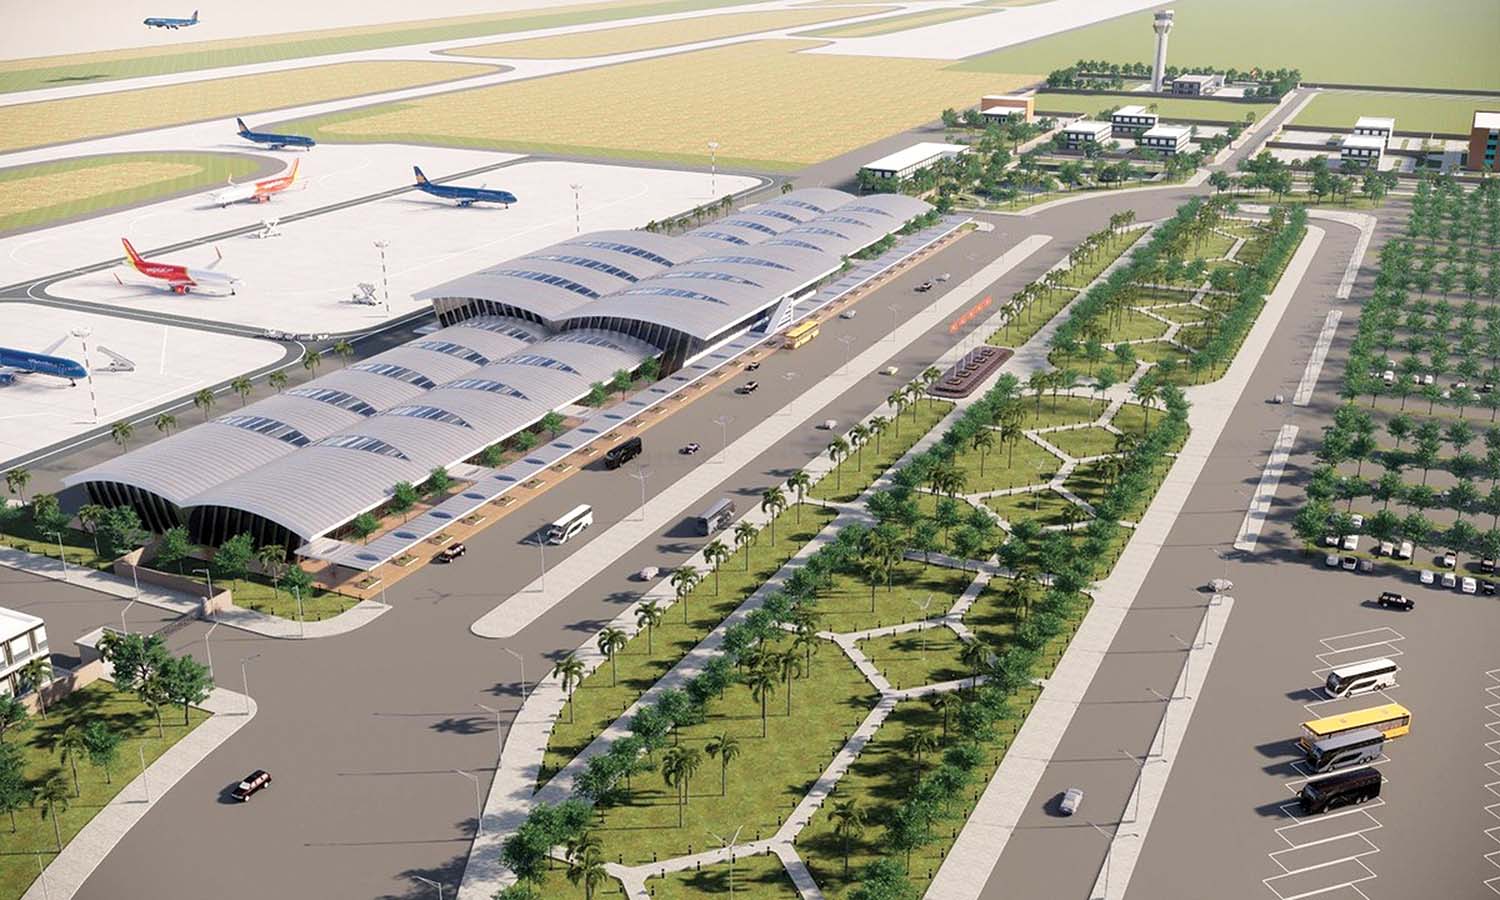 Chấm dứt hợp đồng trước thời hạn dự án BOT sân bay Phan Thiết đúng quy định - Ảnh 1.